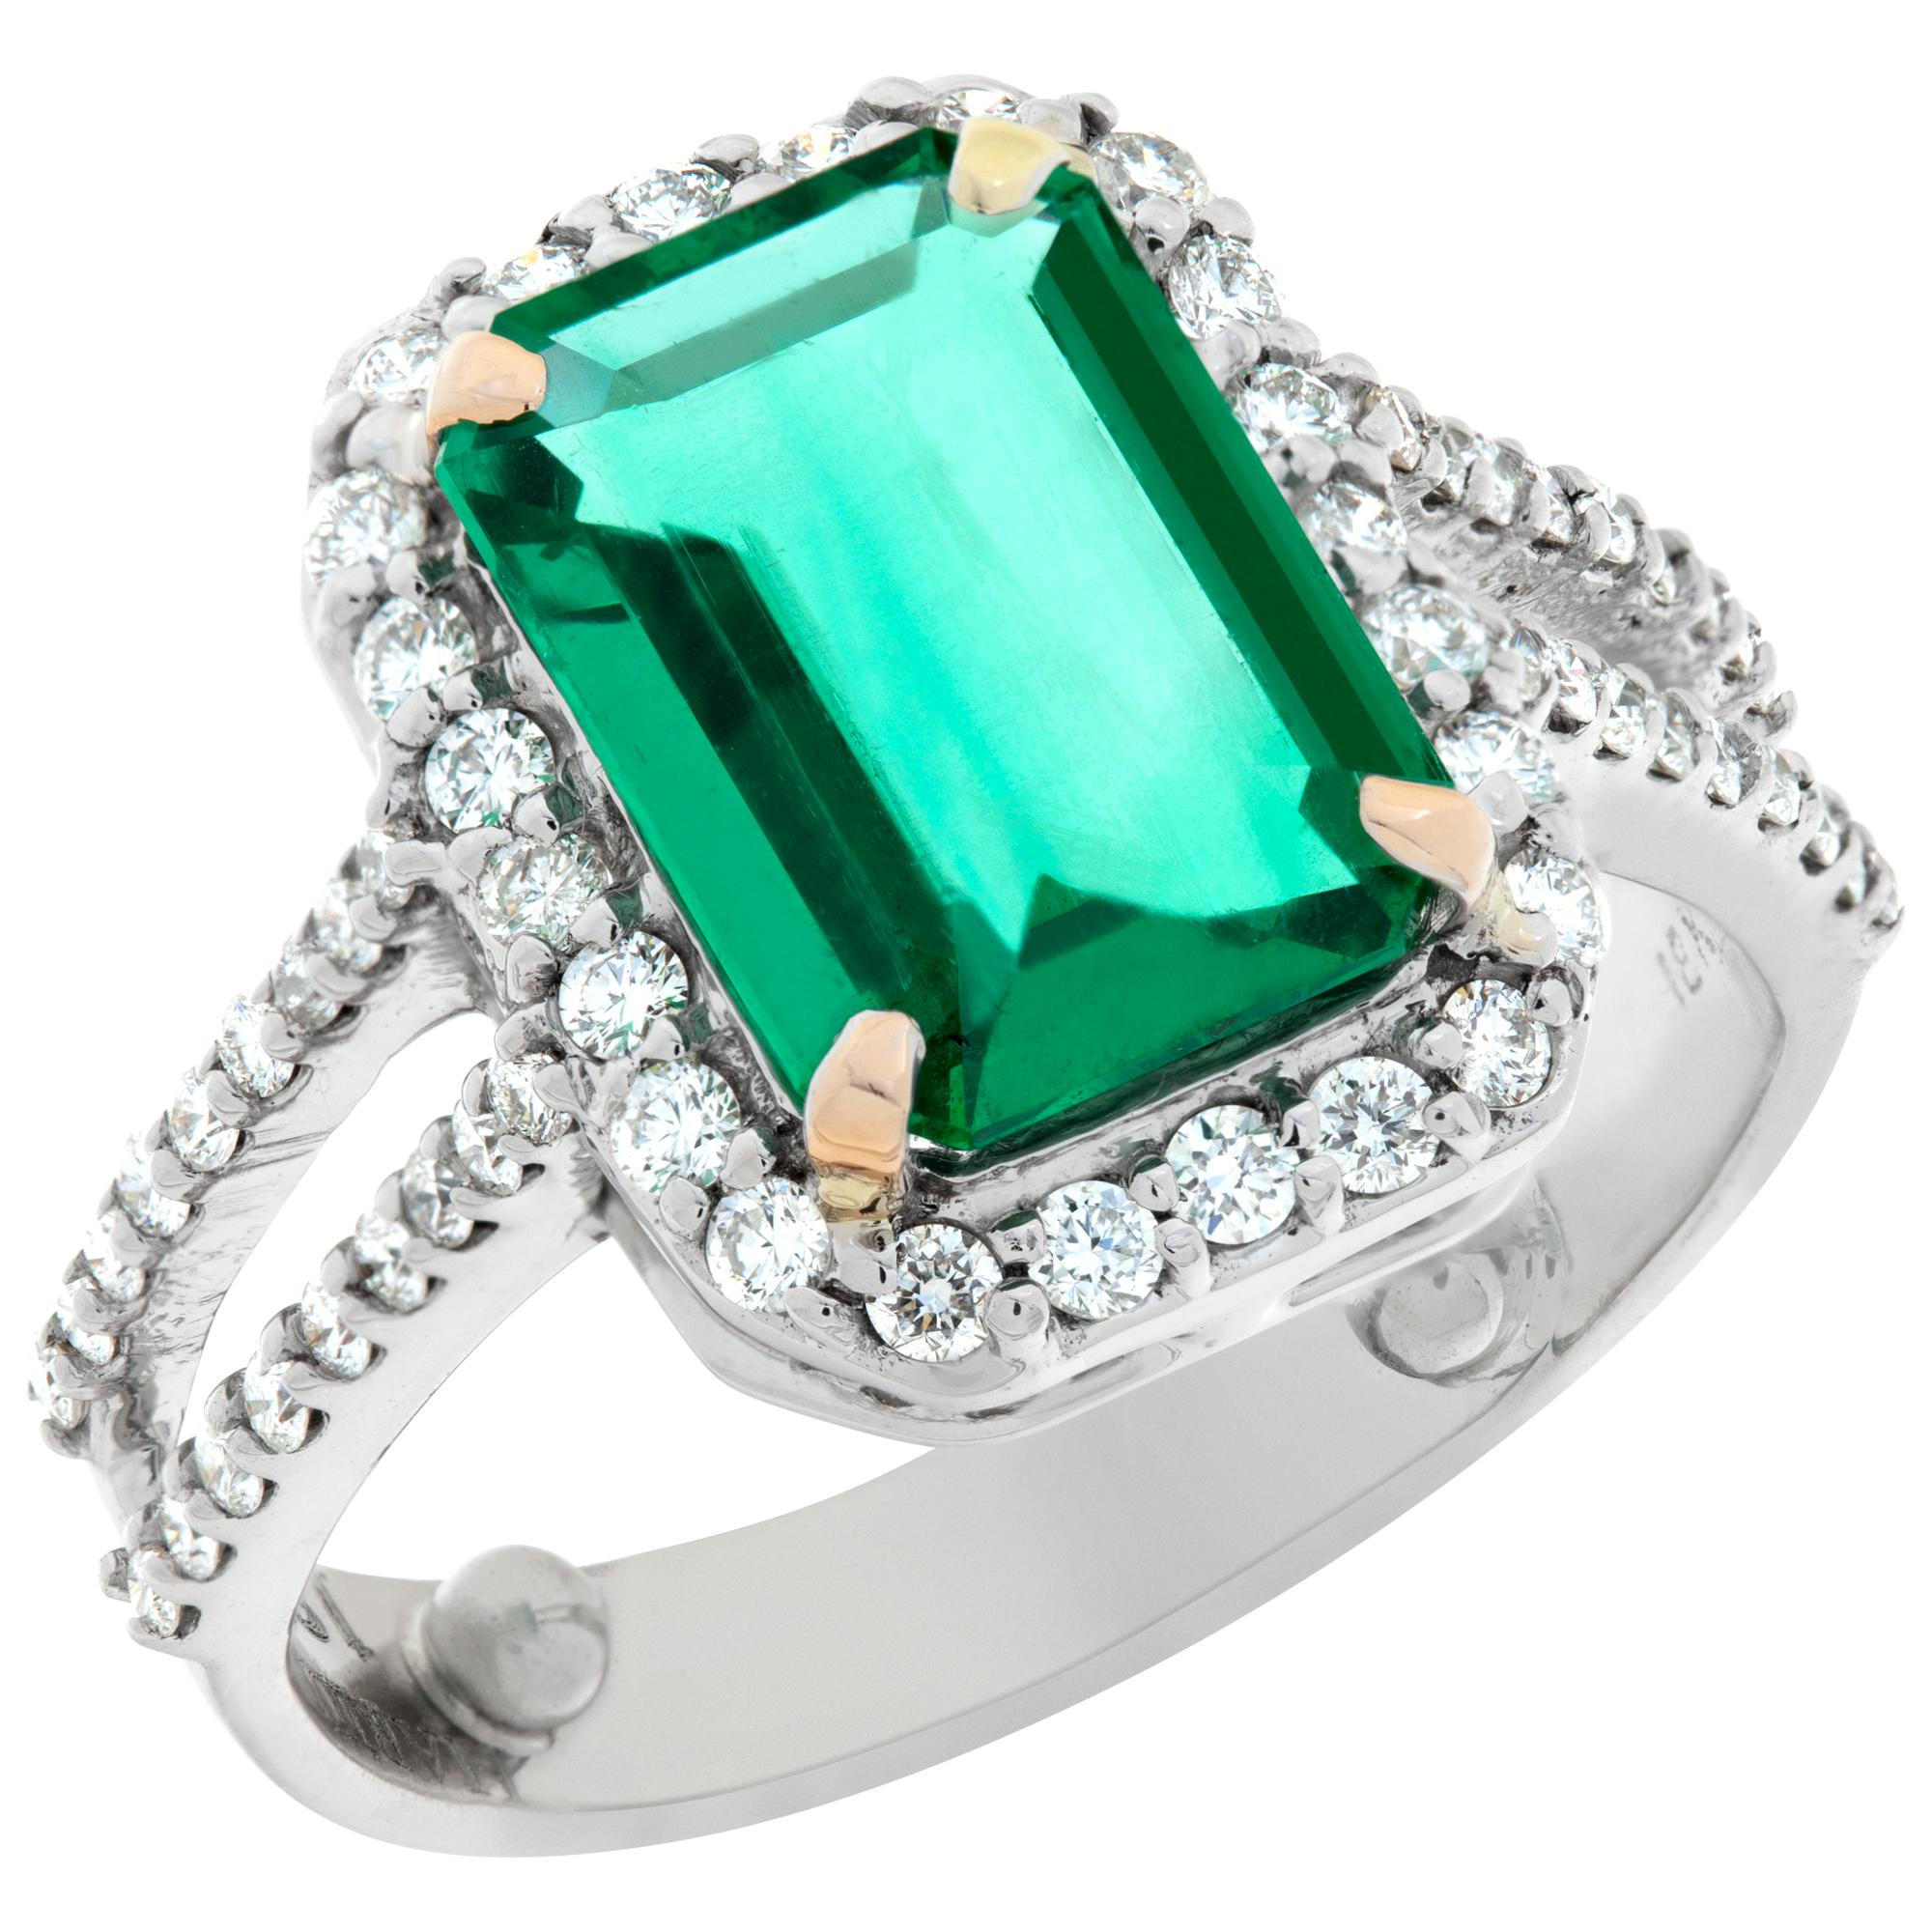 Signierter Ring aus 18 Karat Weißgold mit Smaragd und Diamanten von 